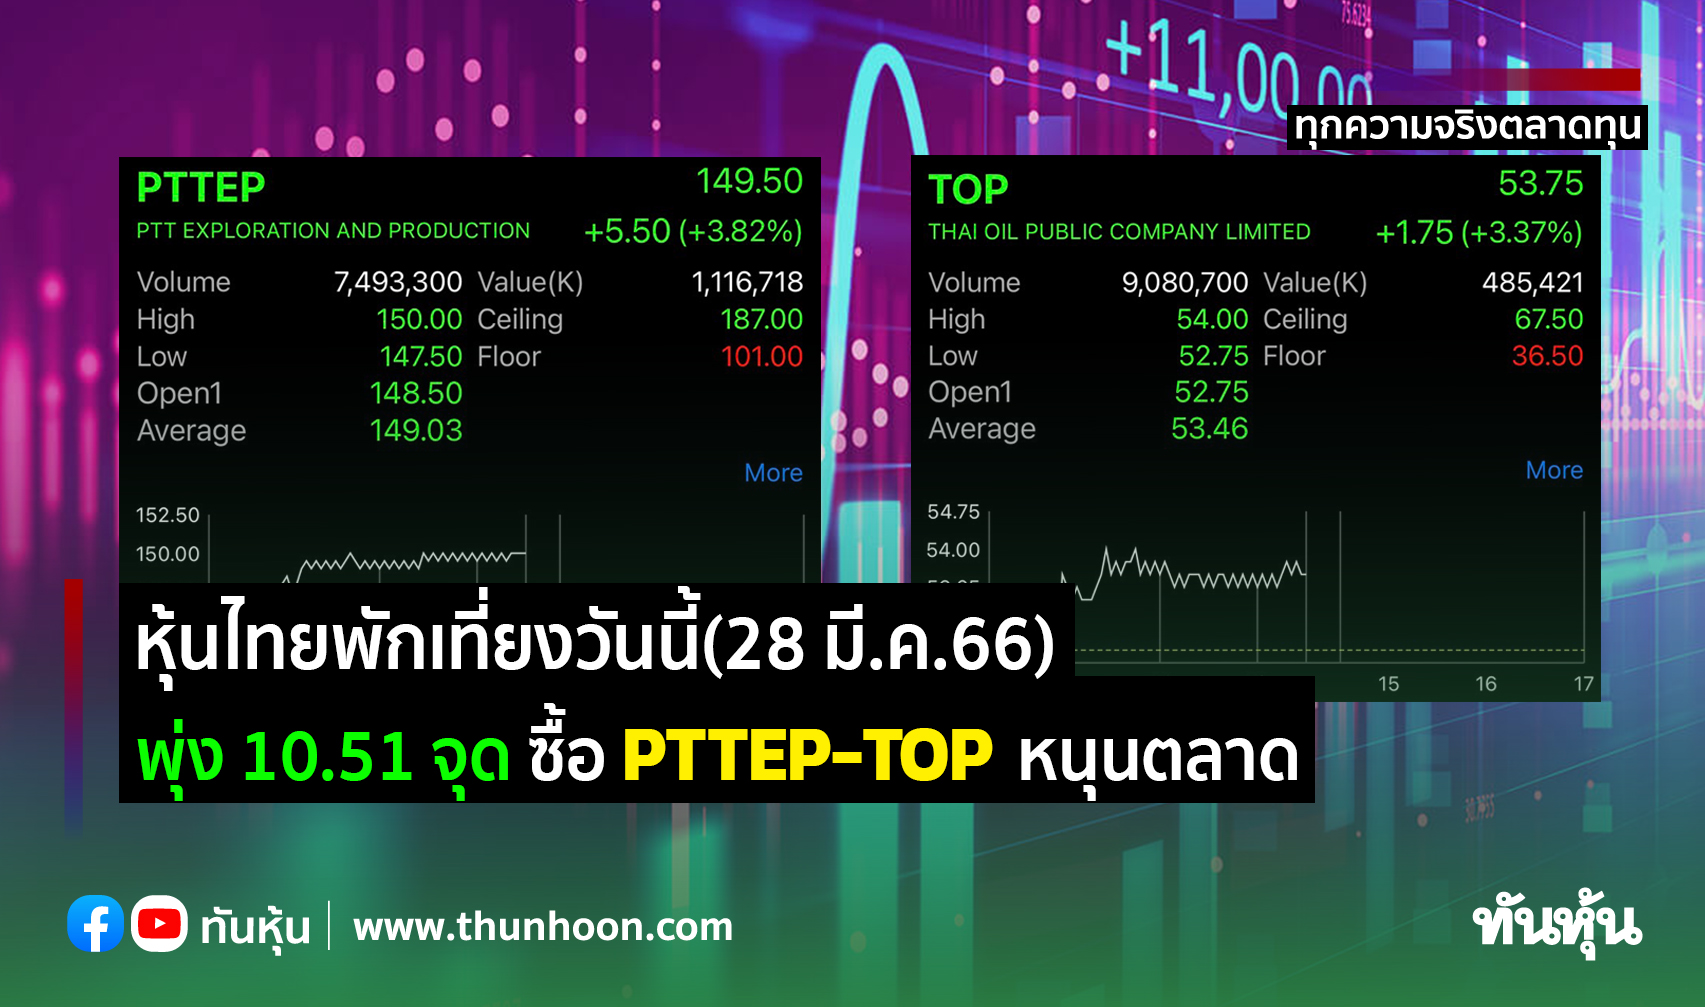 หุ้นไทยพักเที่ยงวันนี้(28 มี.ค.66) พุ่ง 10.51 จุด ซื้อ PTTEP-TOP หนุนตลาด